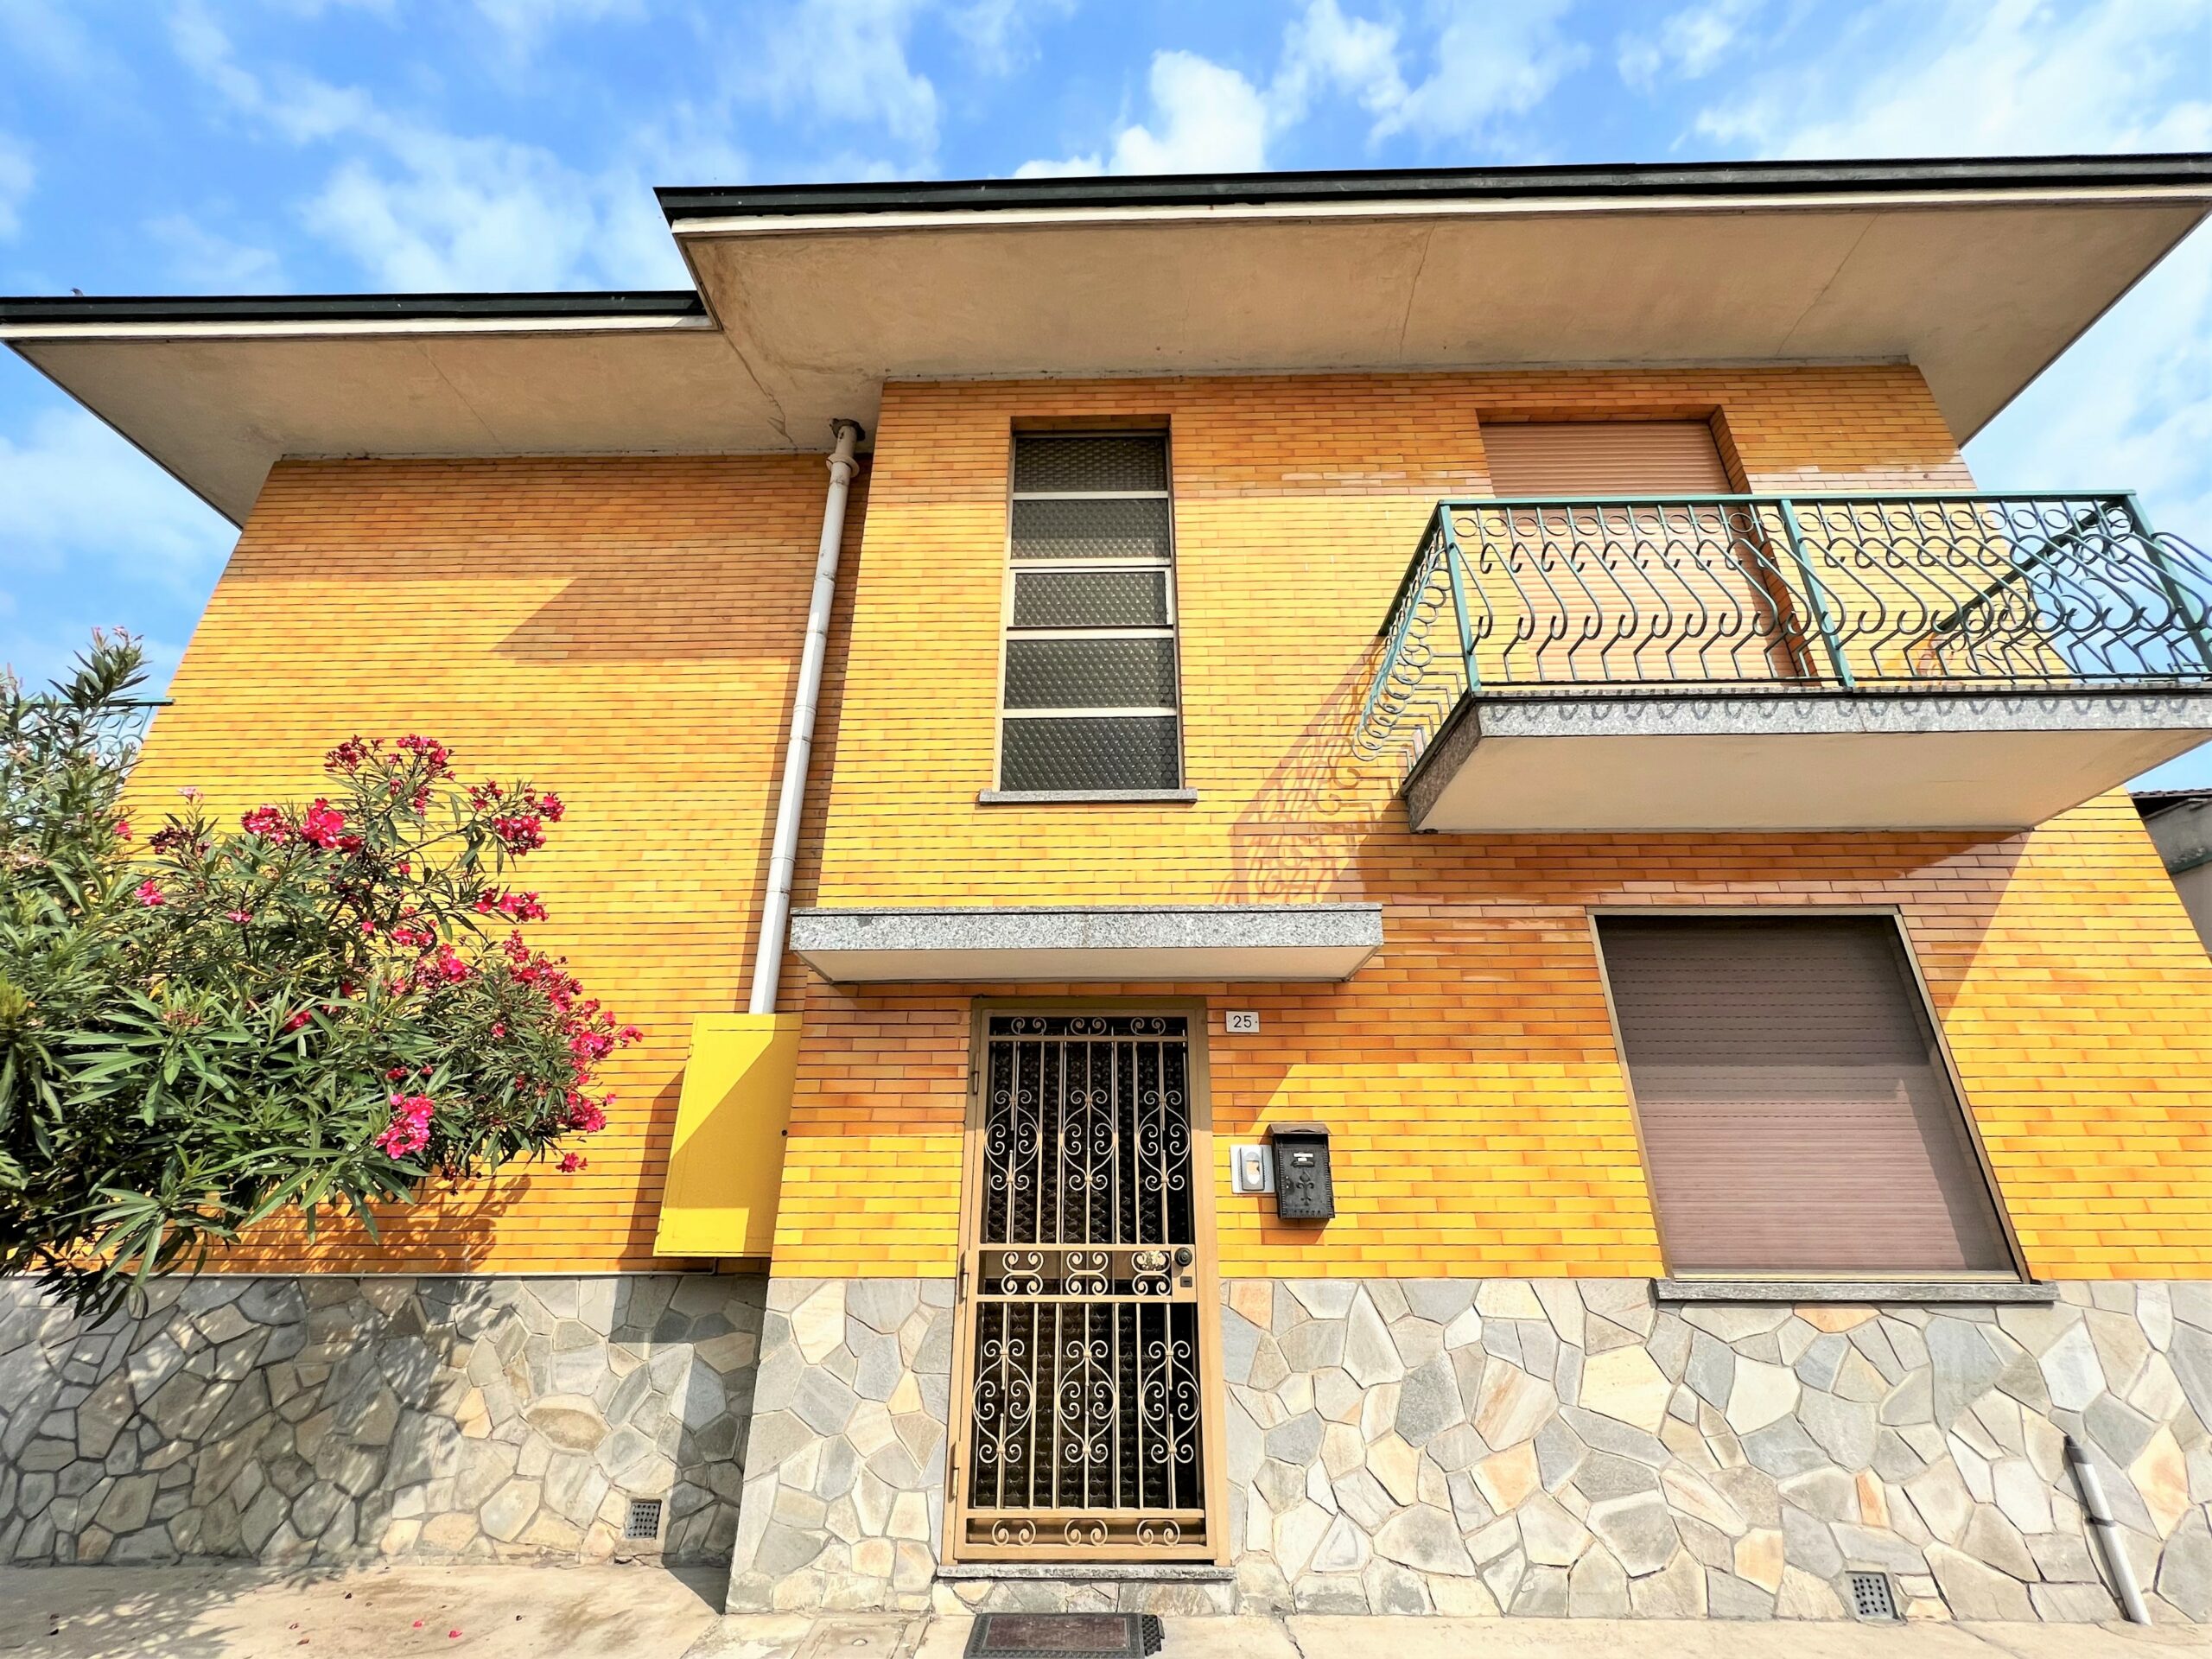 Casorate Primo (PV) – Appartamento trelocali con balconi